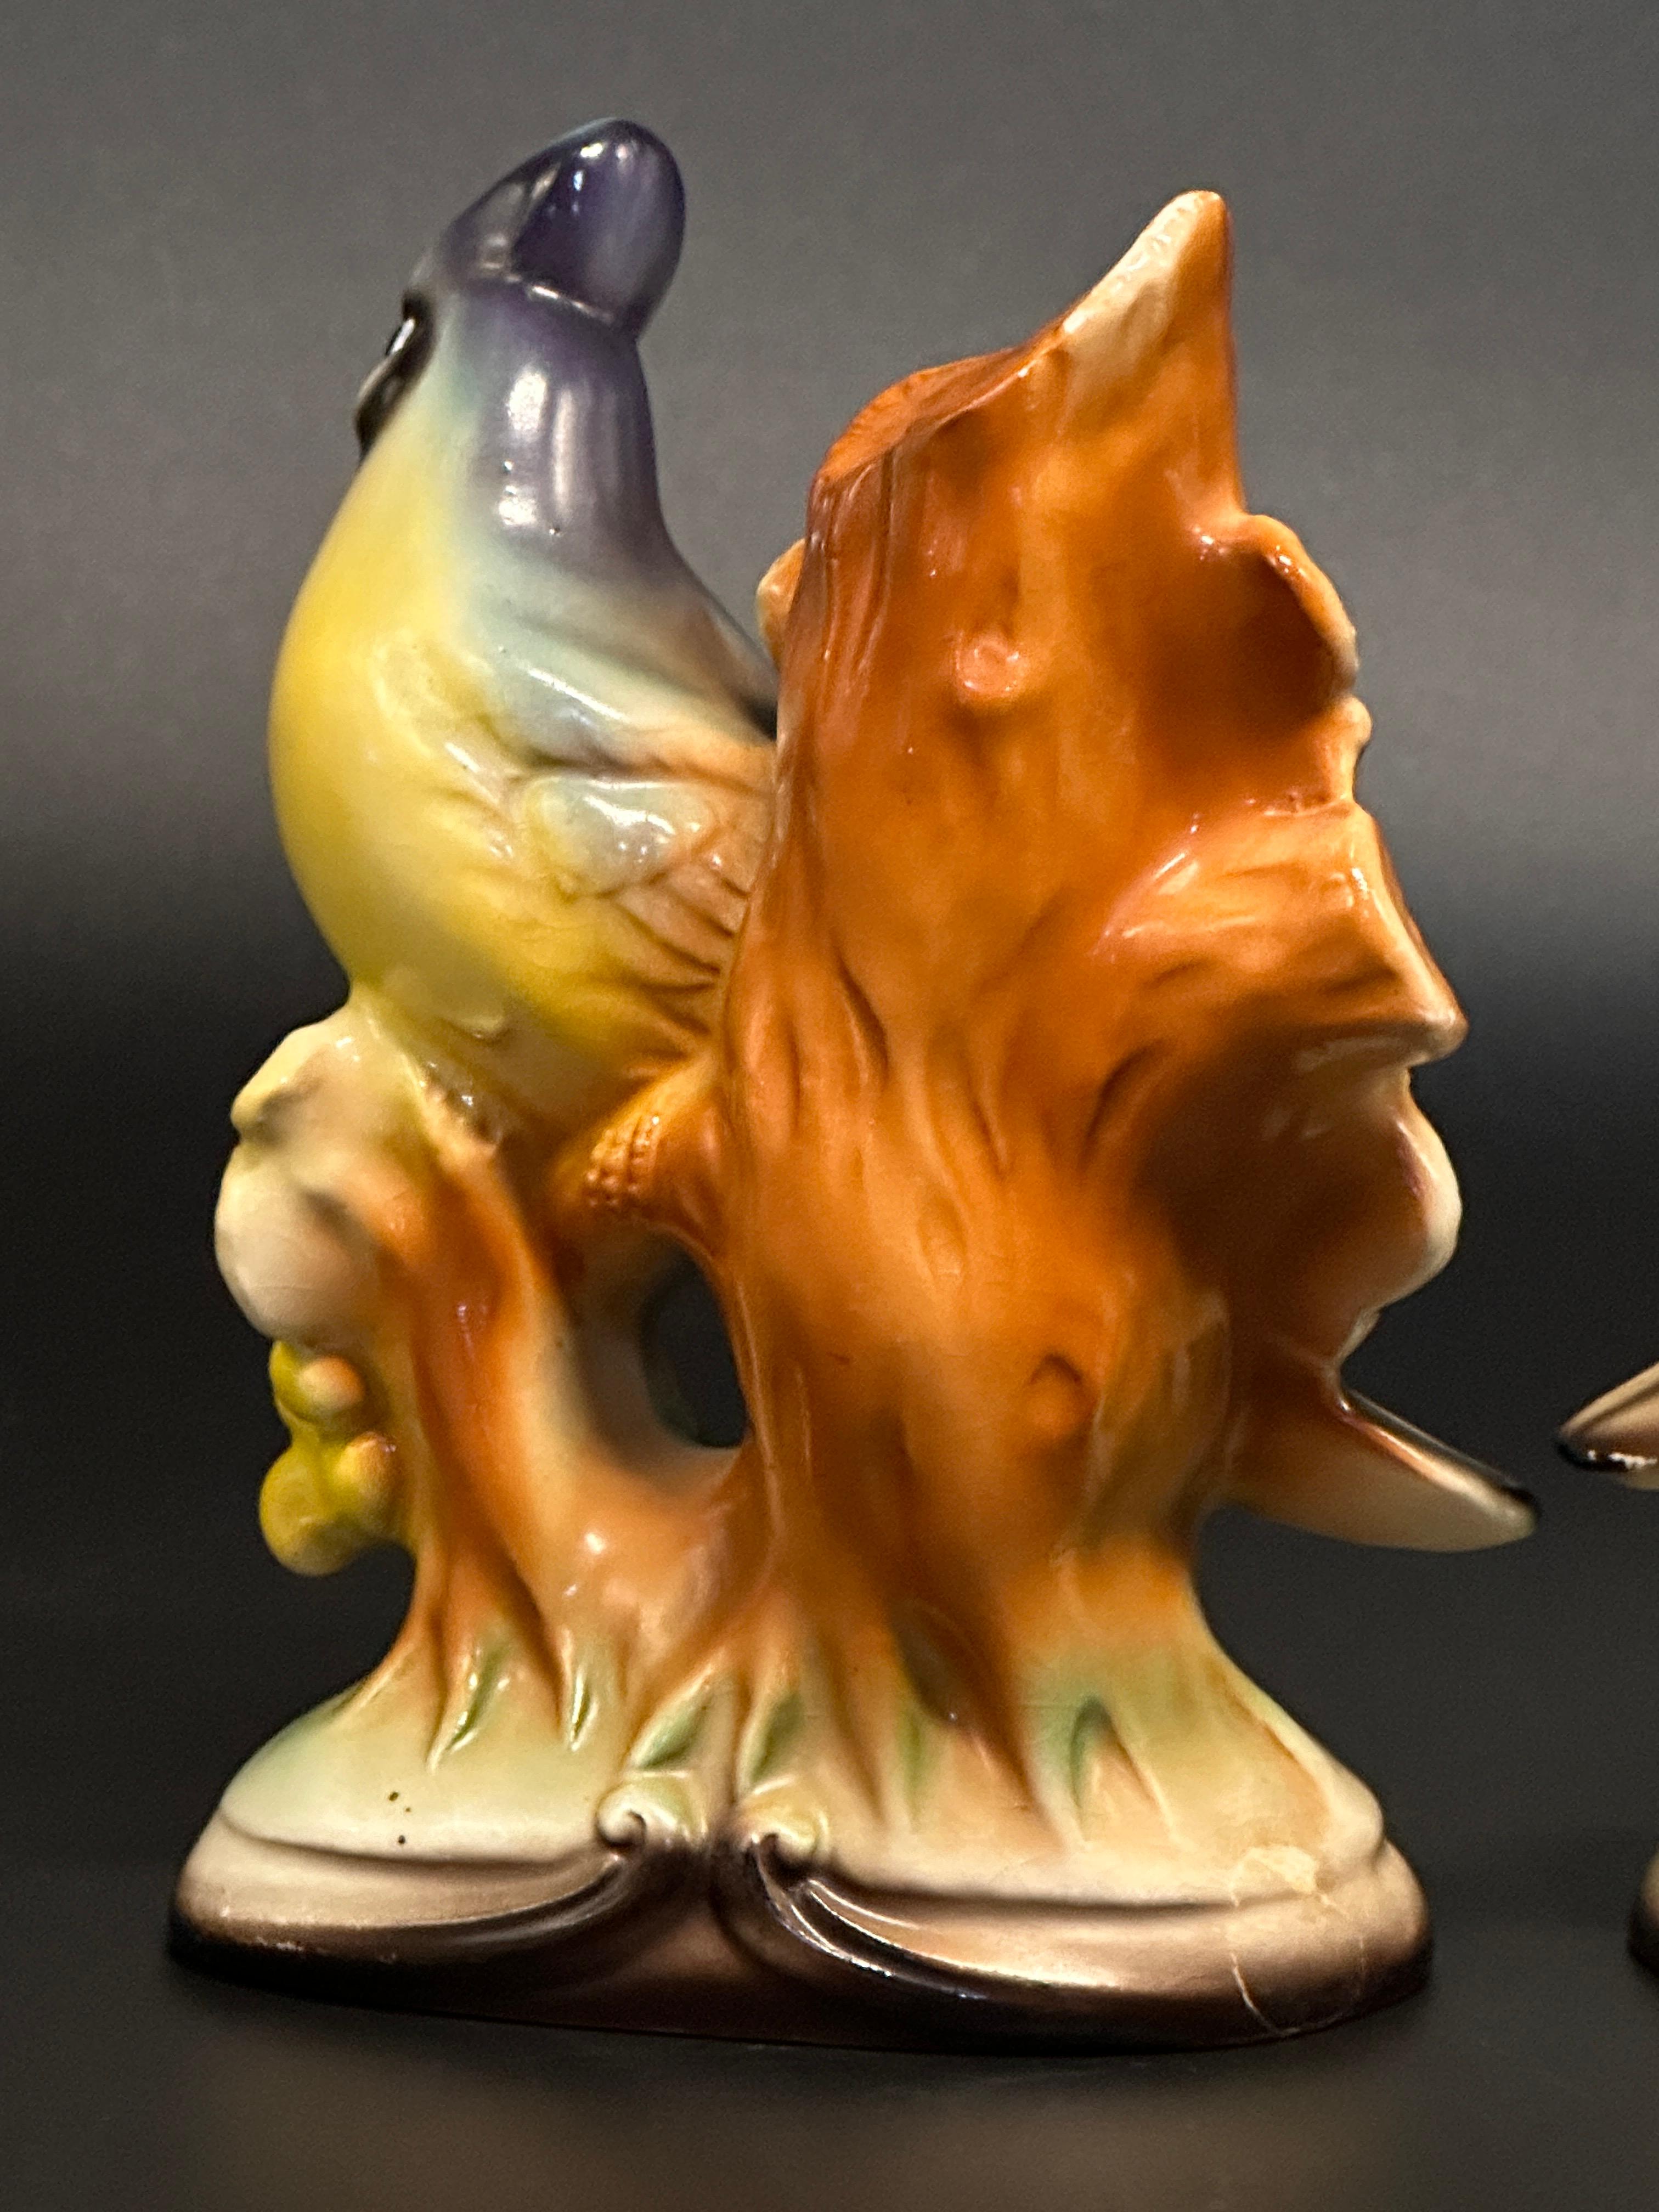 Vintage Porcelain Robin and Blue Jay Figurines